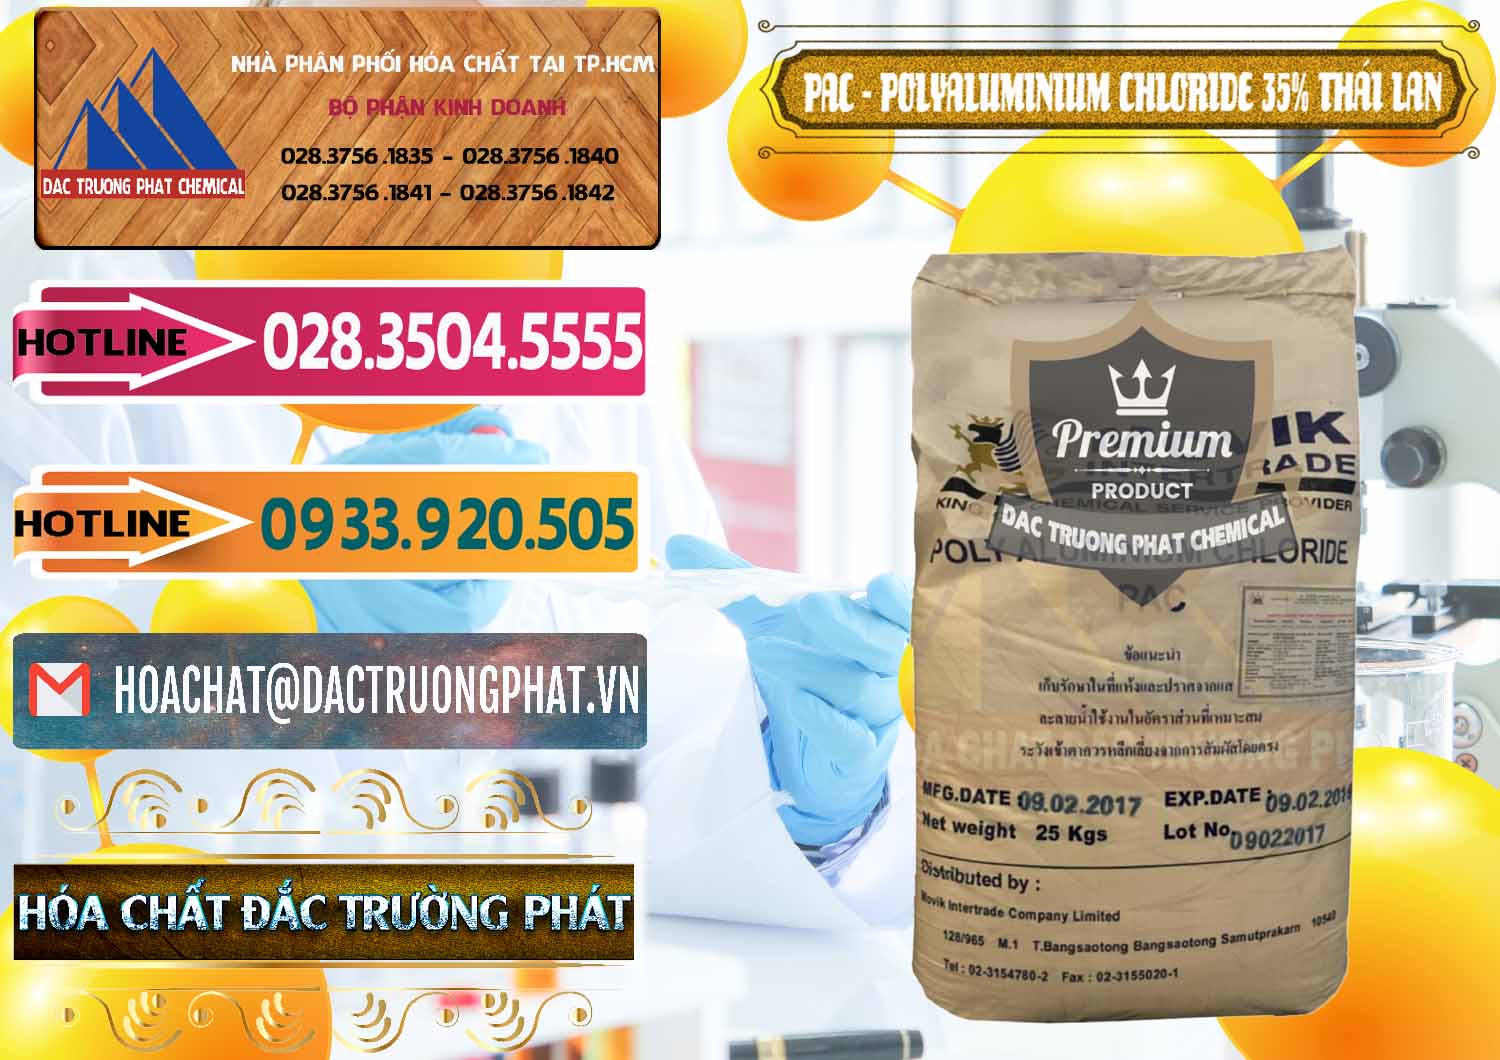 Công ty nhập khẩu ( bán ) PAC - Polyaluminium Chloride 35% Thái Lan Thailand - 0470 - Cty chuyên kinh doanh & cung cấp hóa chất tại TP.HCM - dactruongphat.vn